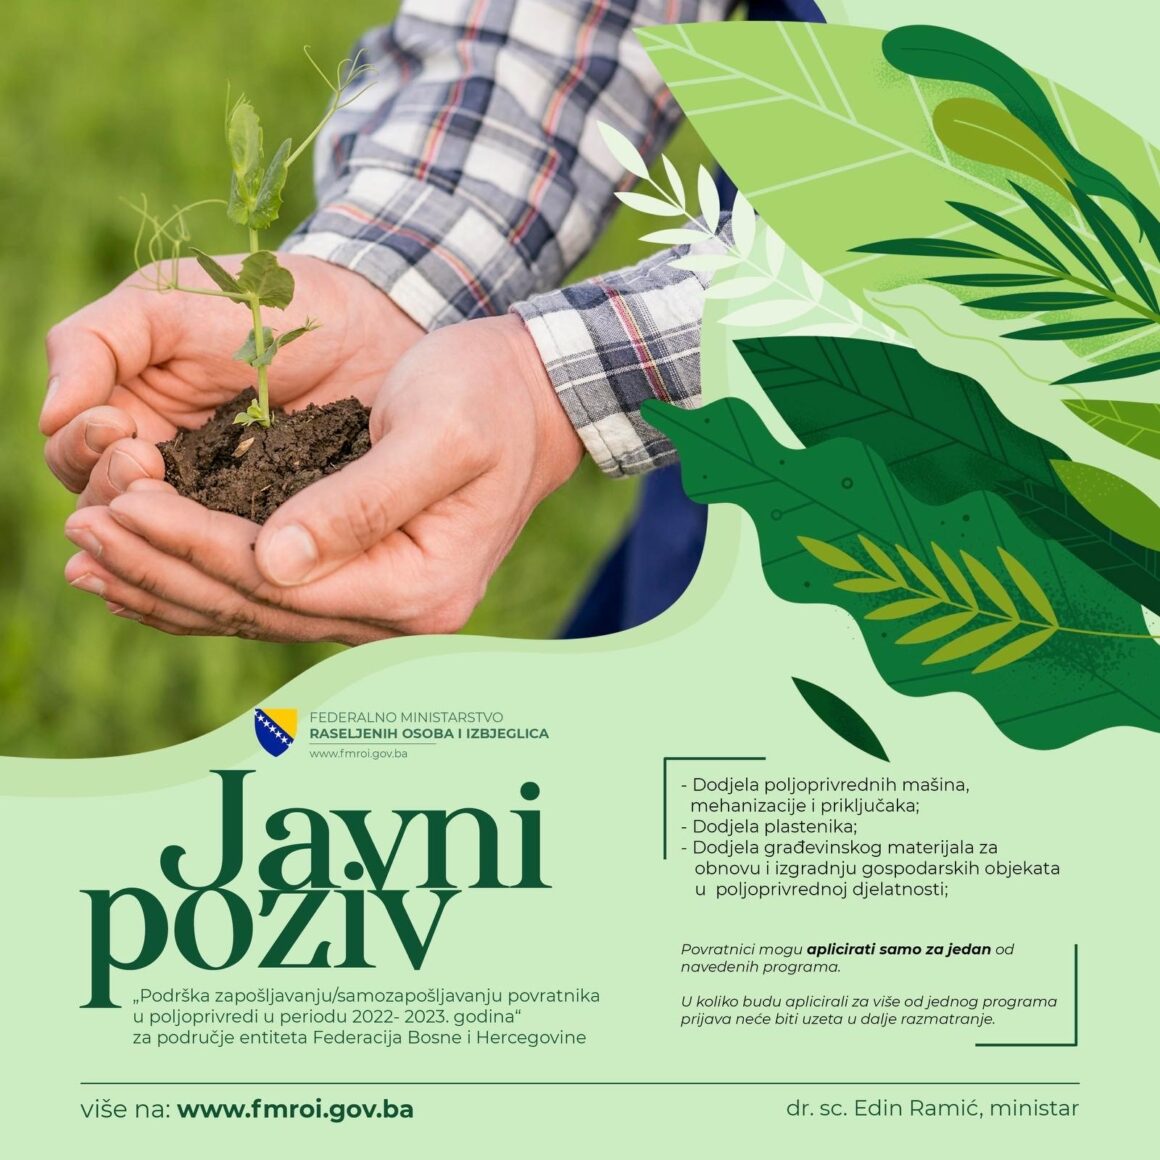 J A V N I   P O Z I V  za podnošenje prijava za program pomoći održivog povratka „Podrška zapošljavanju/samozapošljavanju povratnika u poljoprivredi u periodu 2022- 2023.godina“ za područje entiteta Federacija Bosne i Hercegovine